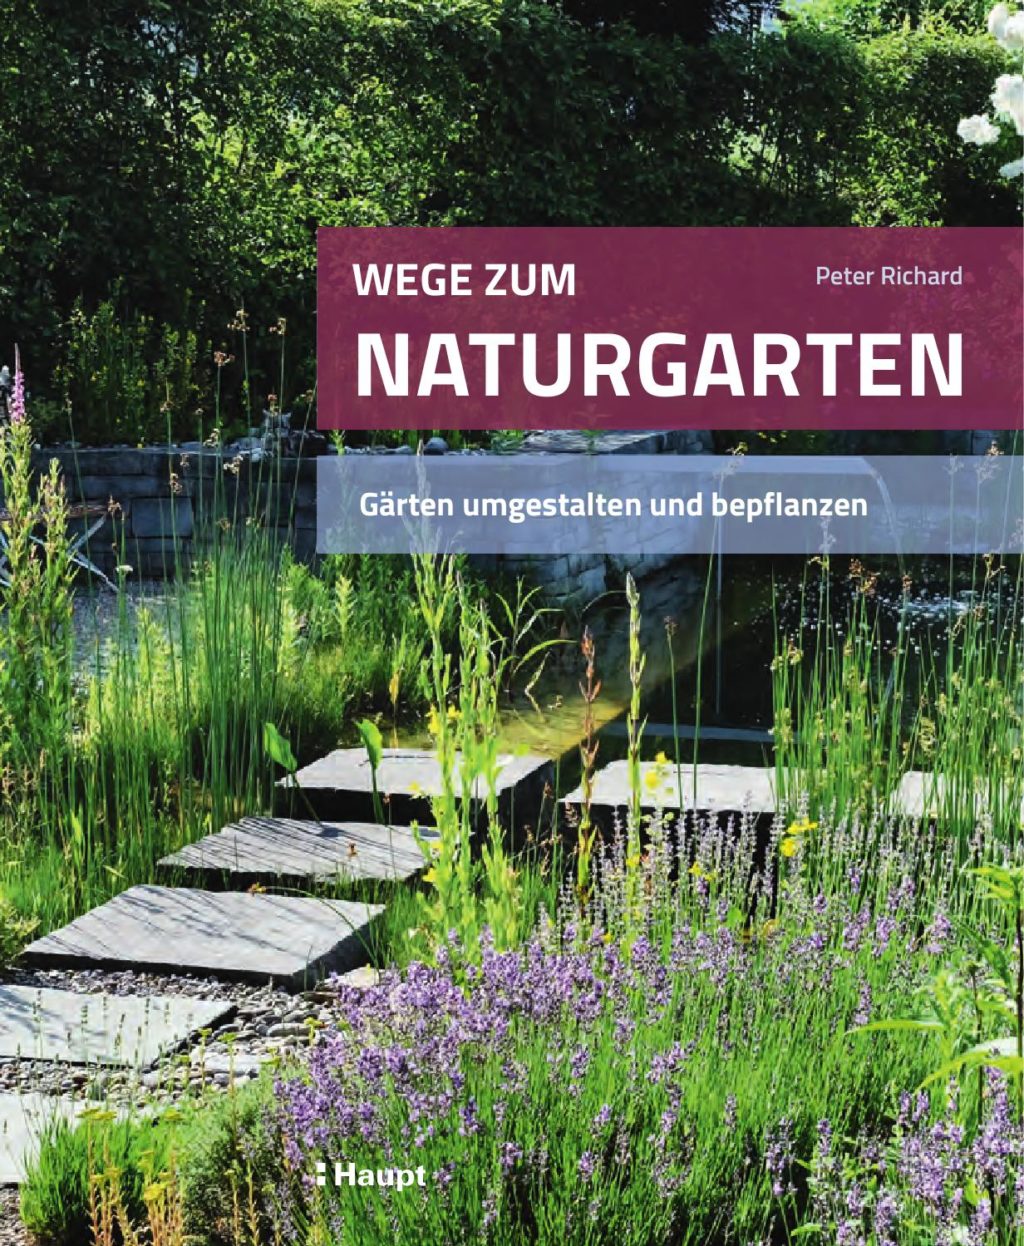 Bern belohnt besonders ökologische Gärten